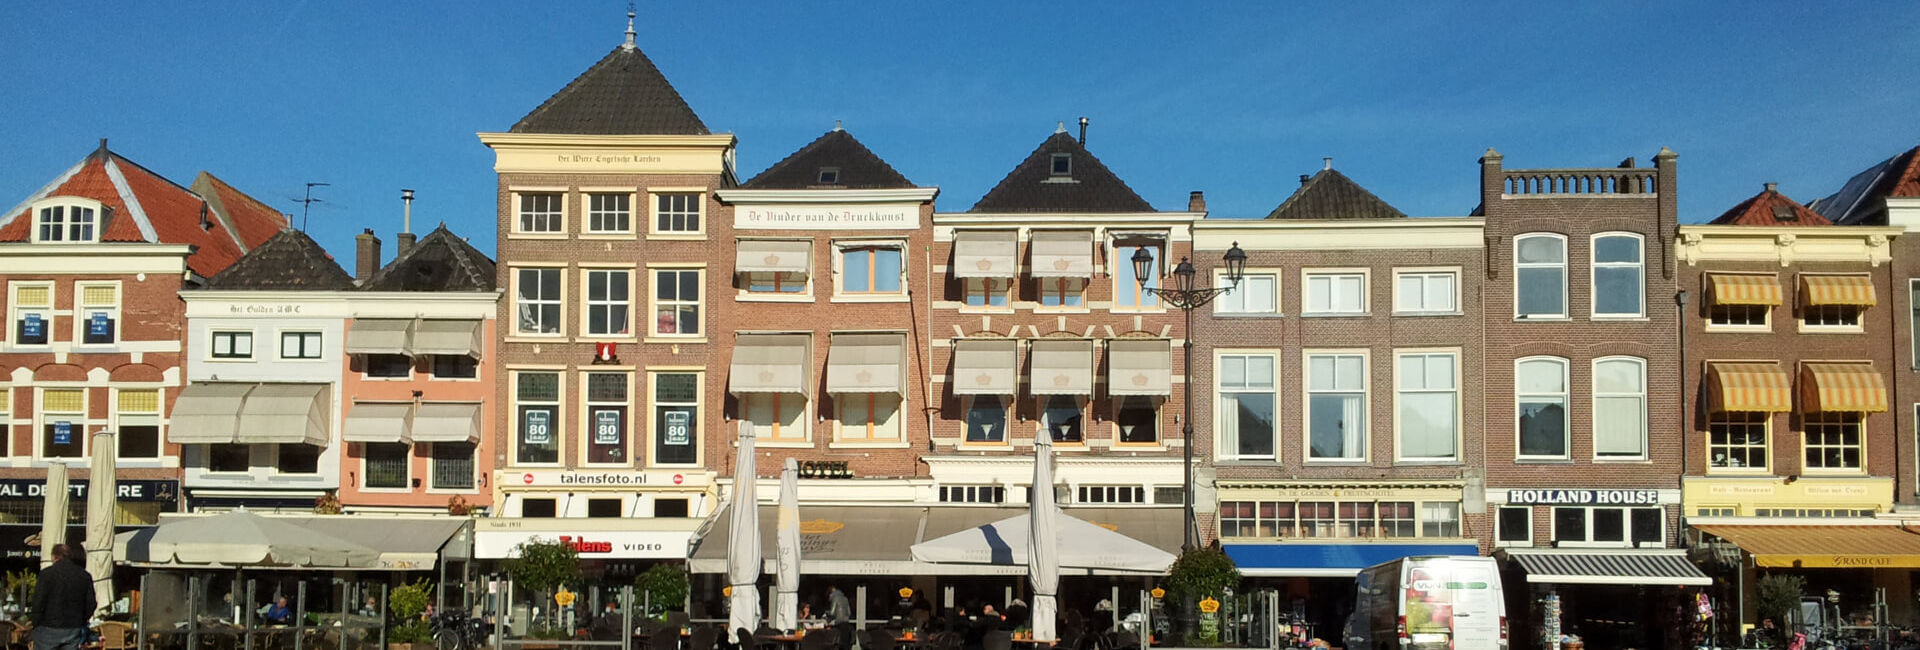 Delft market square - Explore Delft - Gasterij 't Karrewiel